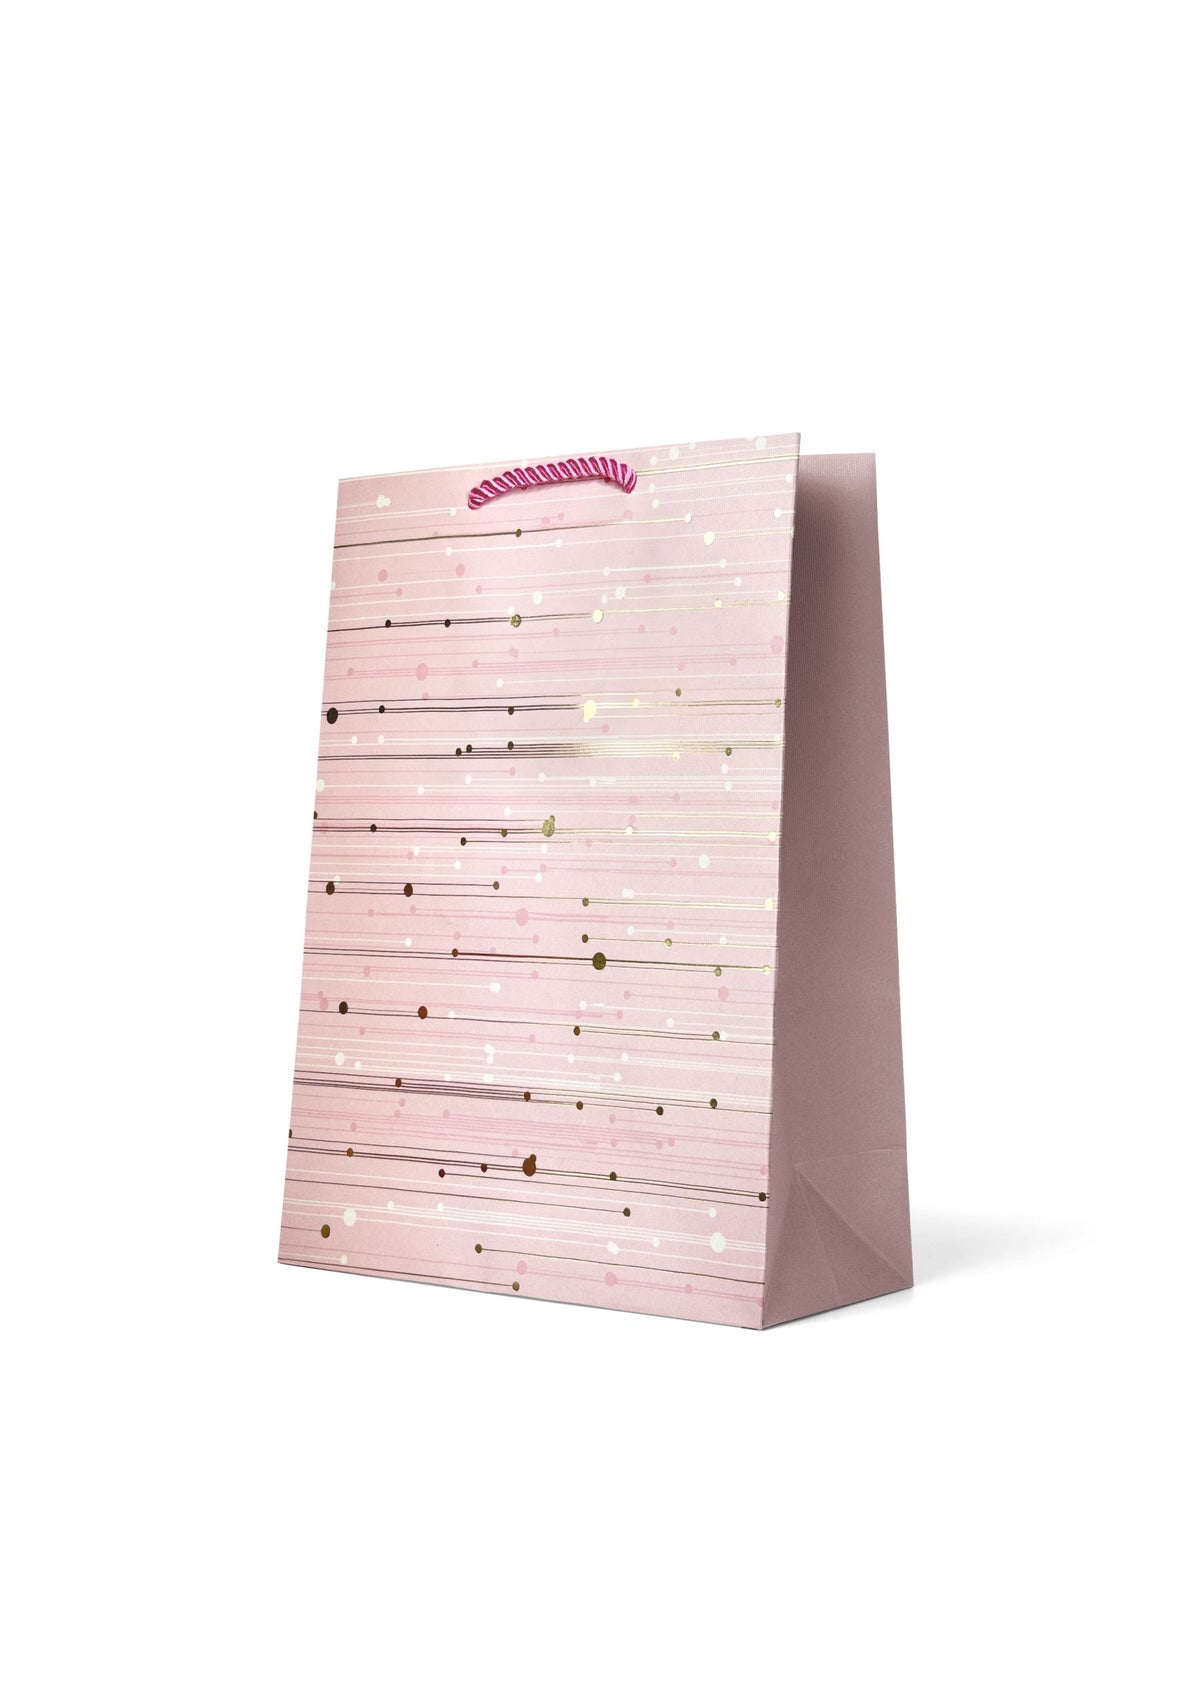 Gift Bag Medium: Gold Foiled Lines on Pink